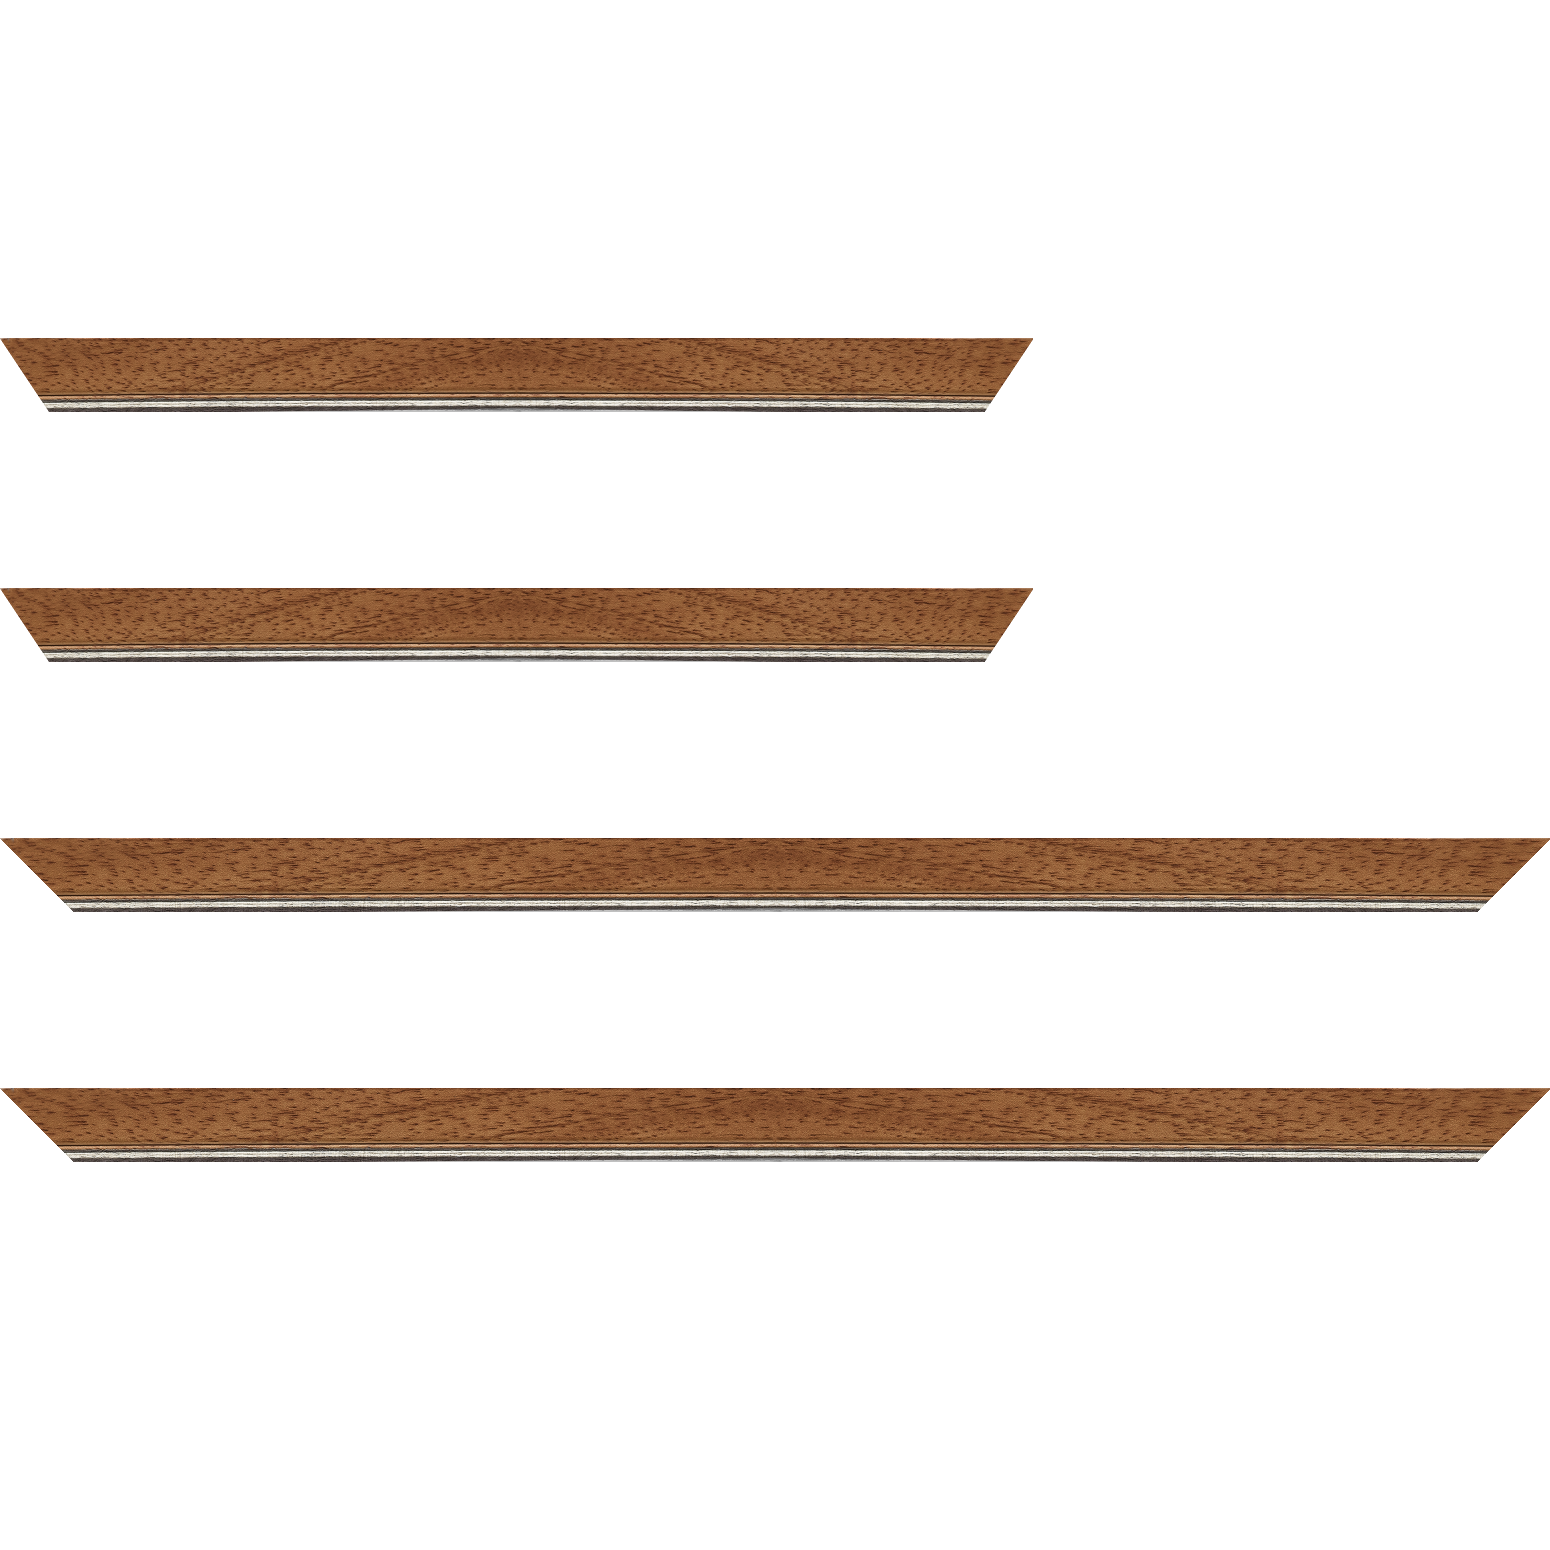 Baguette bois profil plat largeur 2.5cm couleur marron ton bois filet argent - 25x25